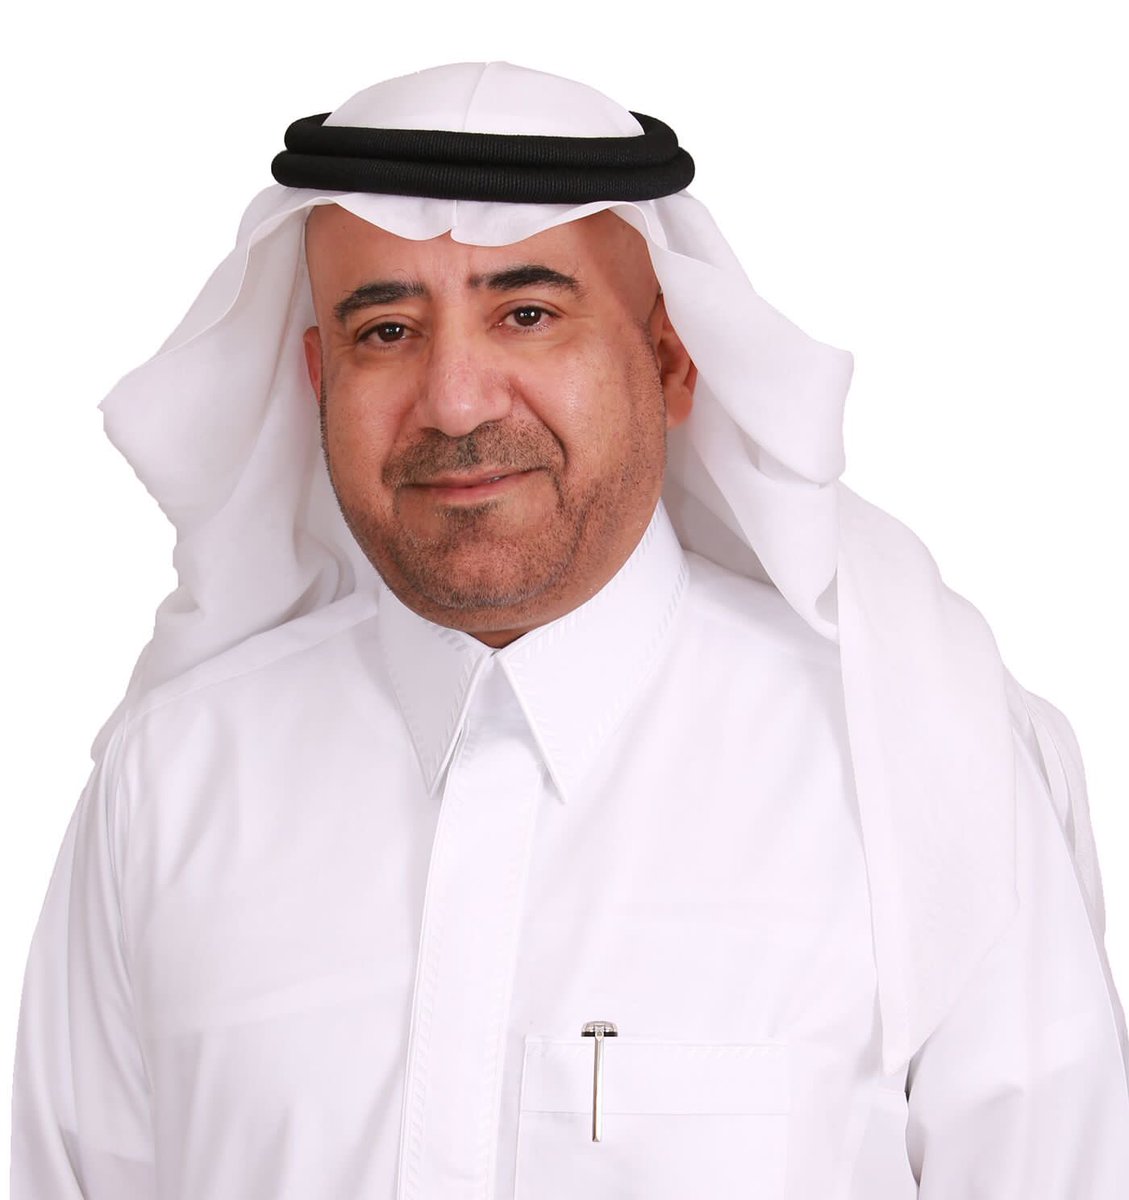 عبد الله الراجحي:

مصرف الراجحي يتكفل بالتعليم الجامعي الخاص للأيتام في جميع مناطق المملكة.